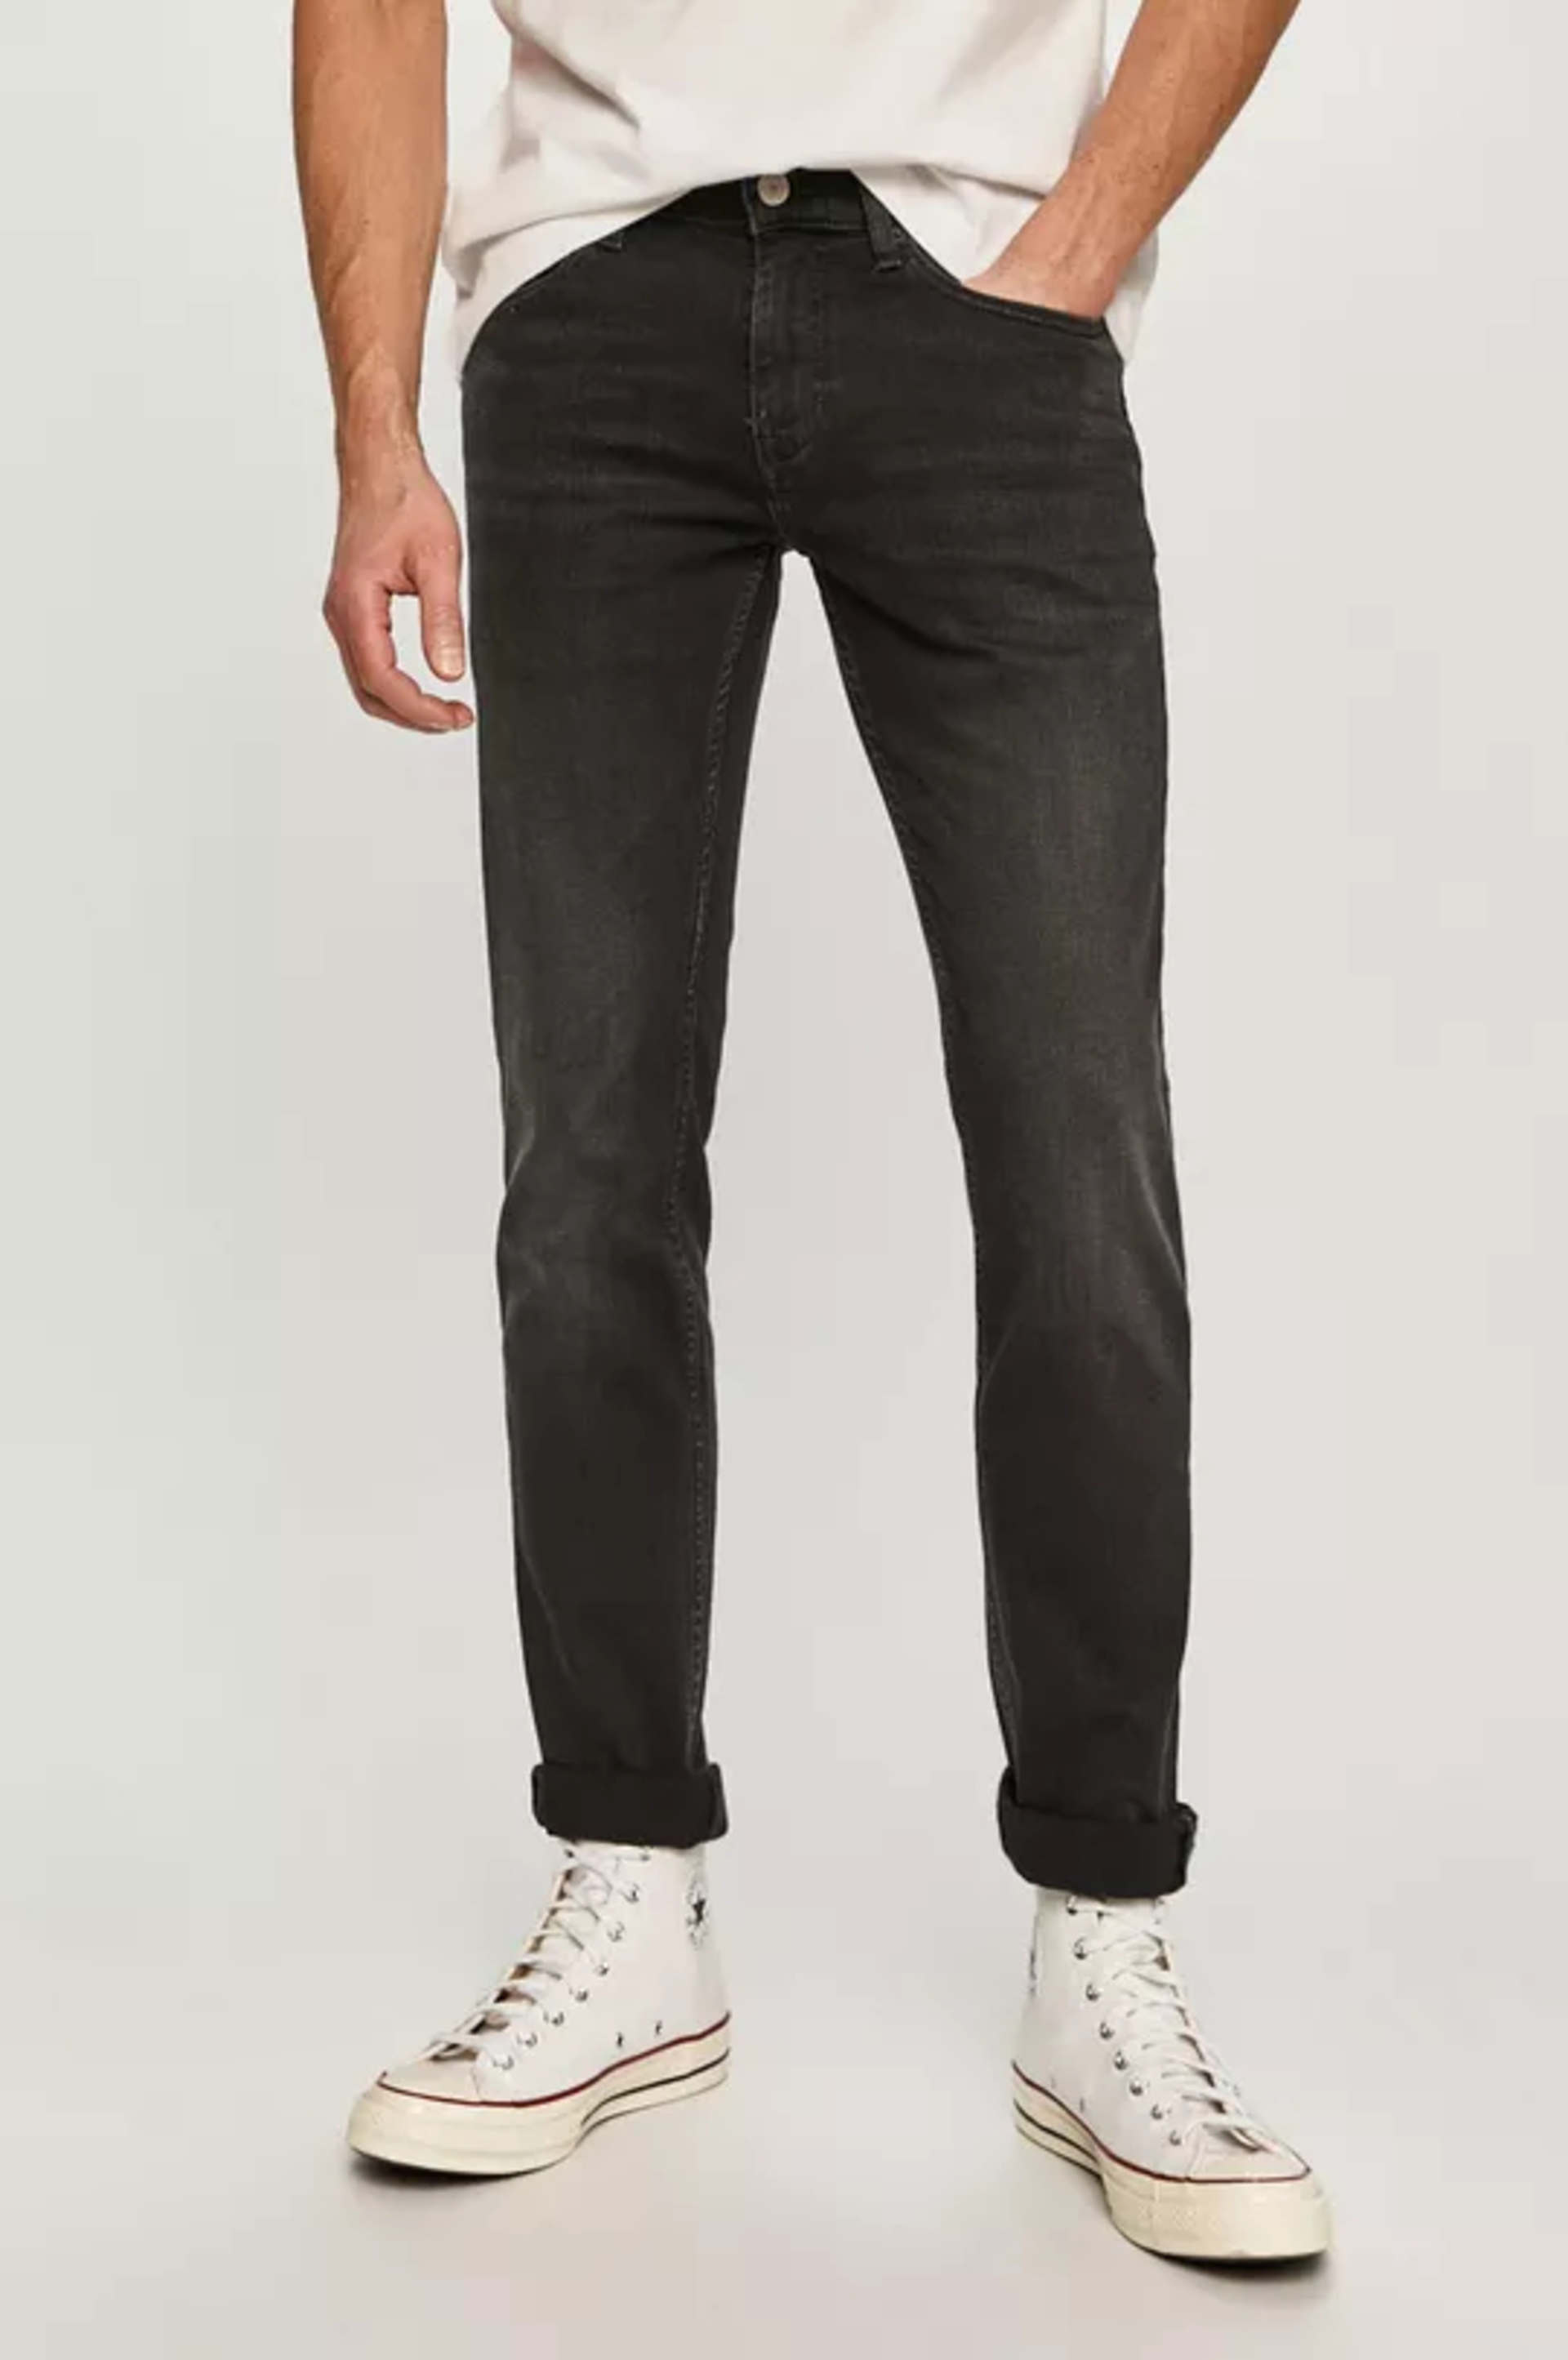 Tommy Jeans pánské tmavě šedé džíny SCANTON SLIM - 31/30 (1BZ)